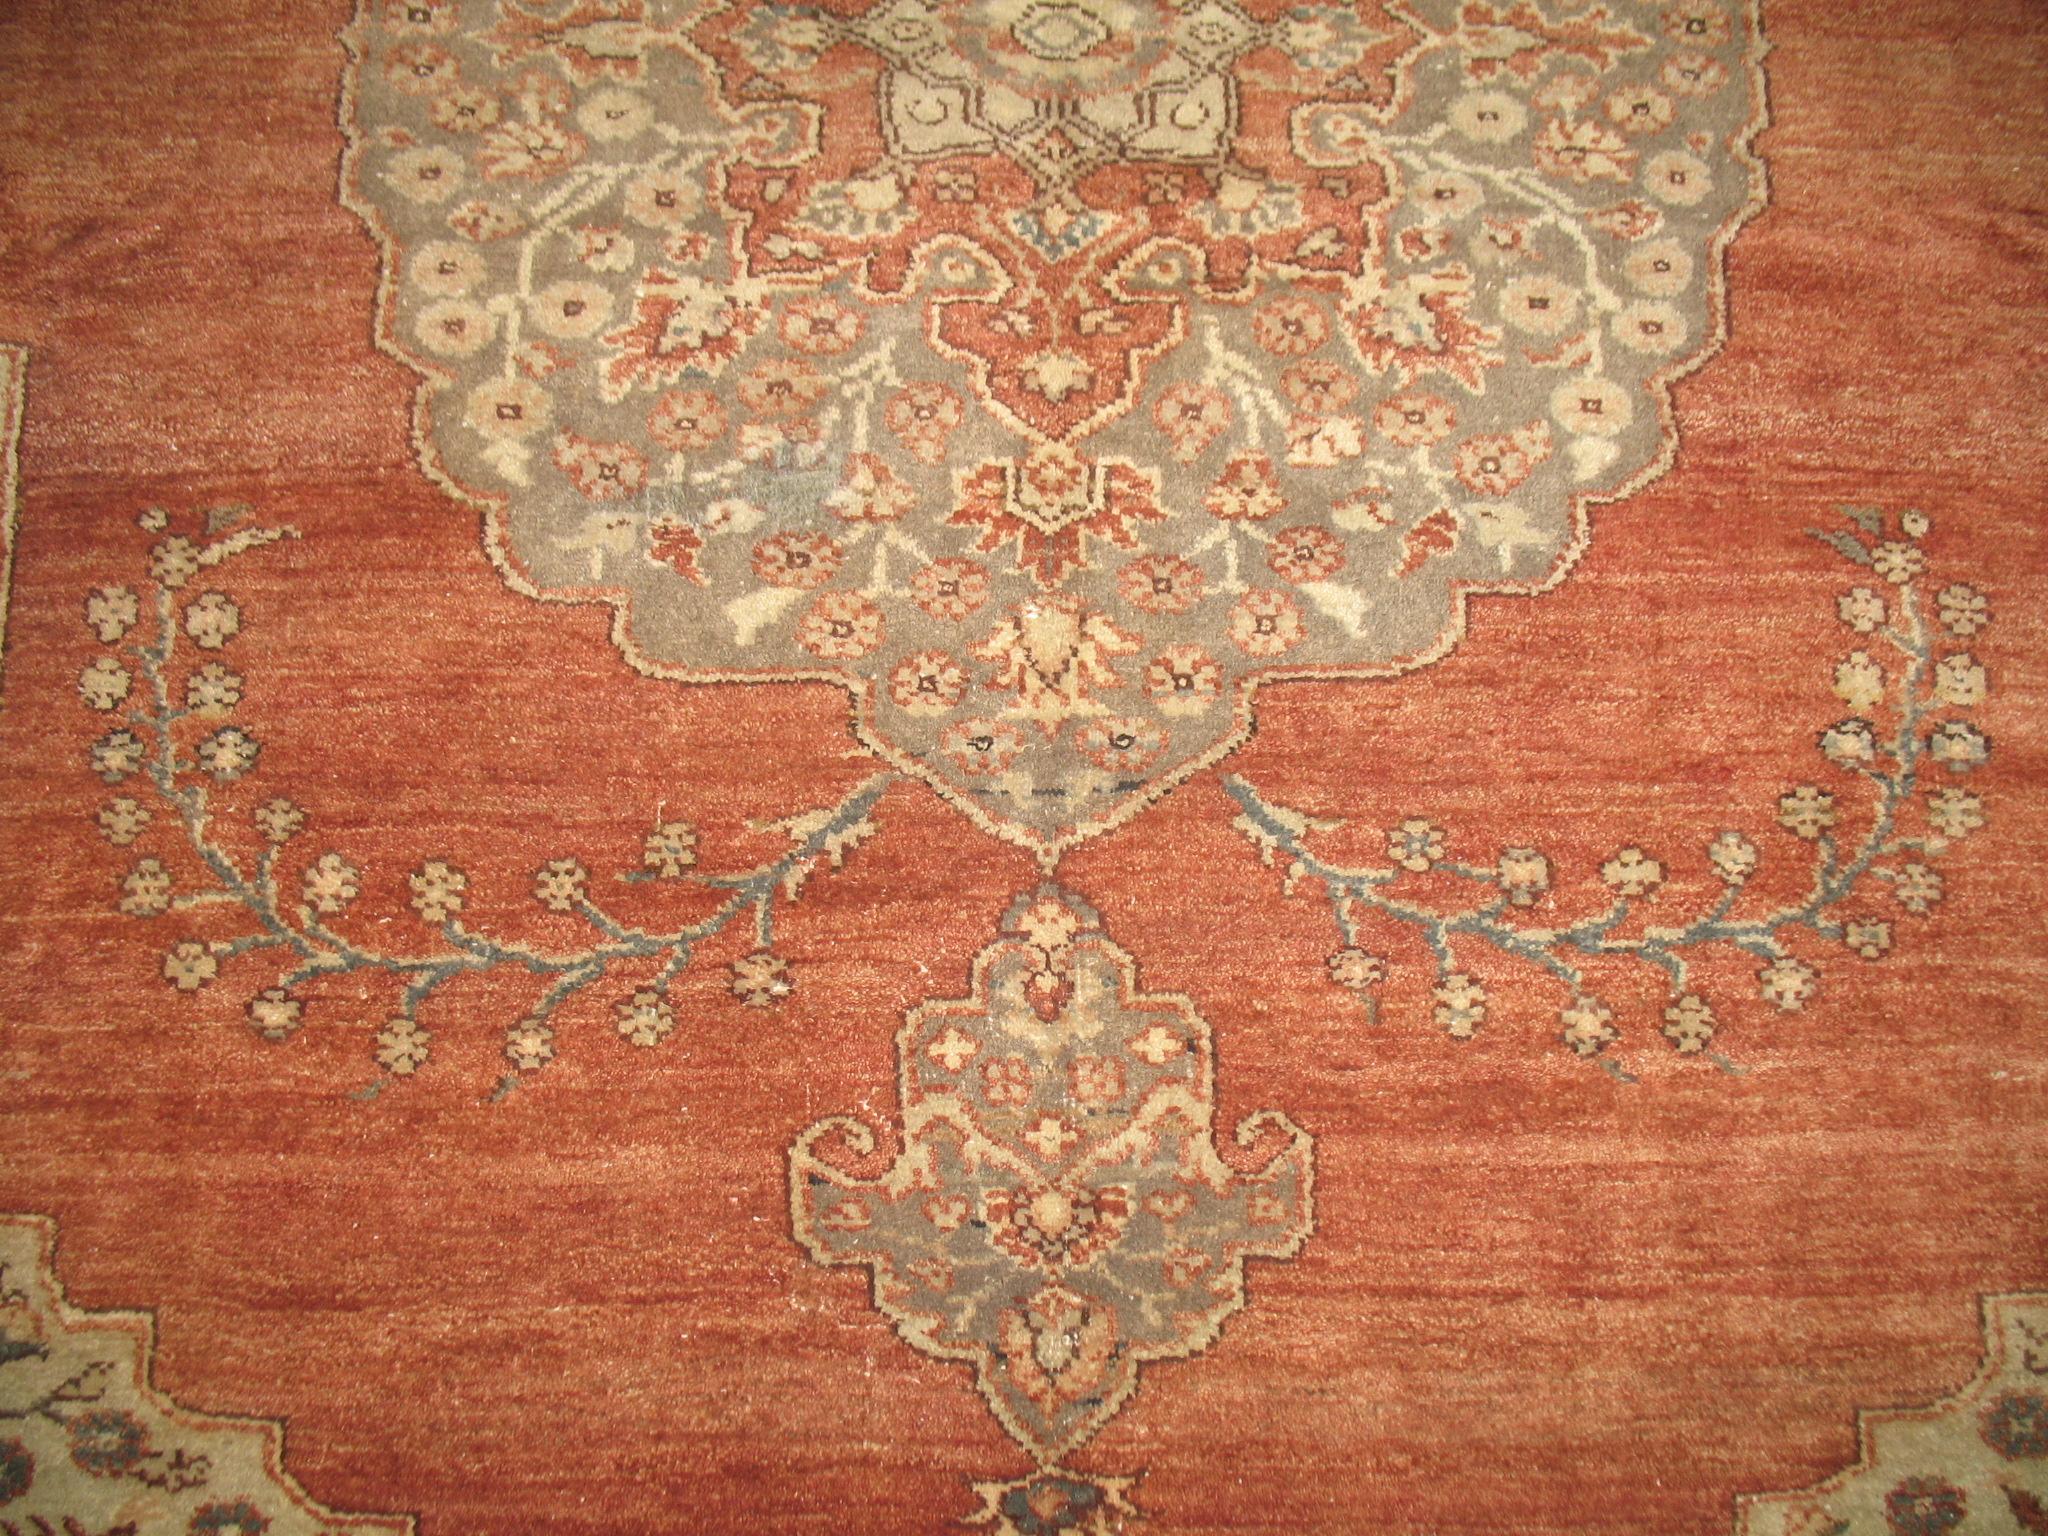 Einzigartiger zimmergroßer türkischer Teppich mit traditionellem orientalischem Muster in Grau-, Apricot- und Elfenbeintönen

Maße: 8'9'' x 10'9''.